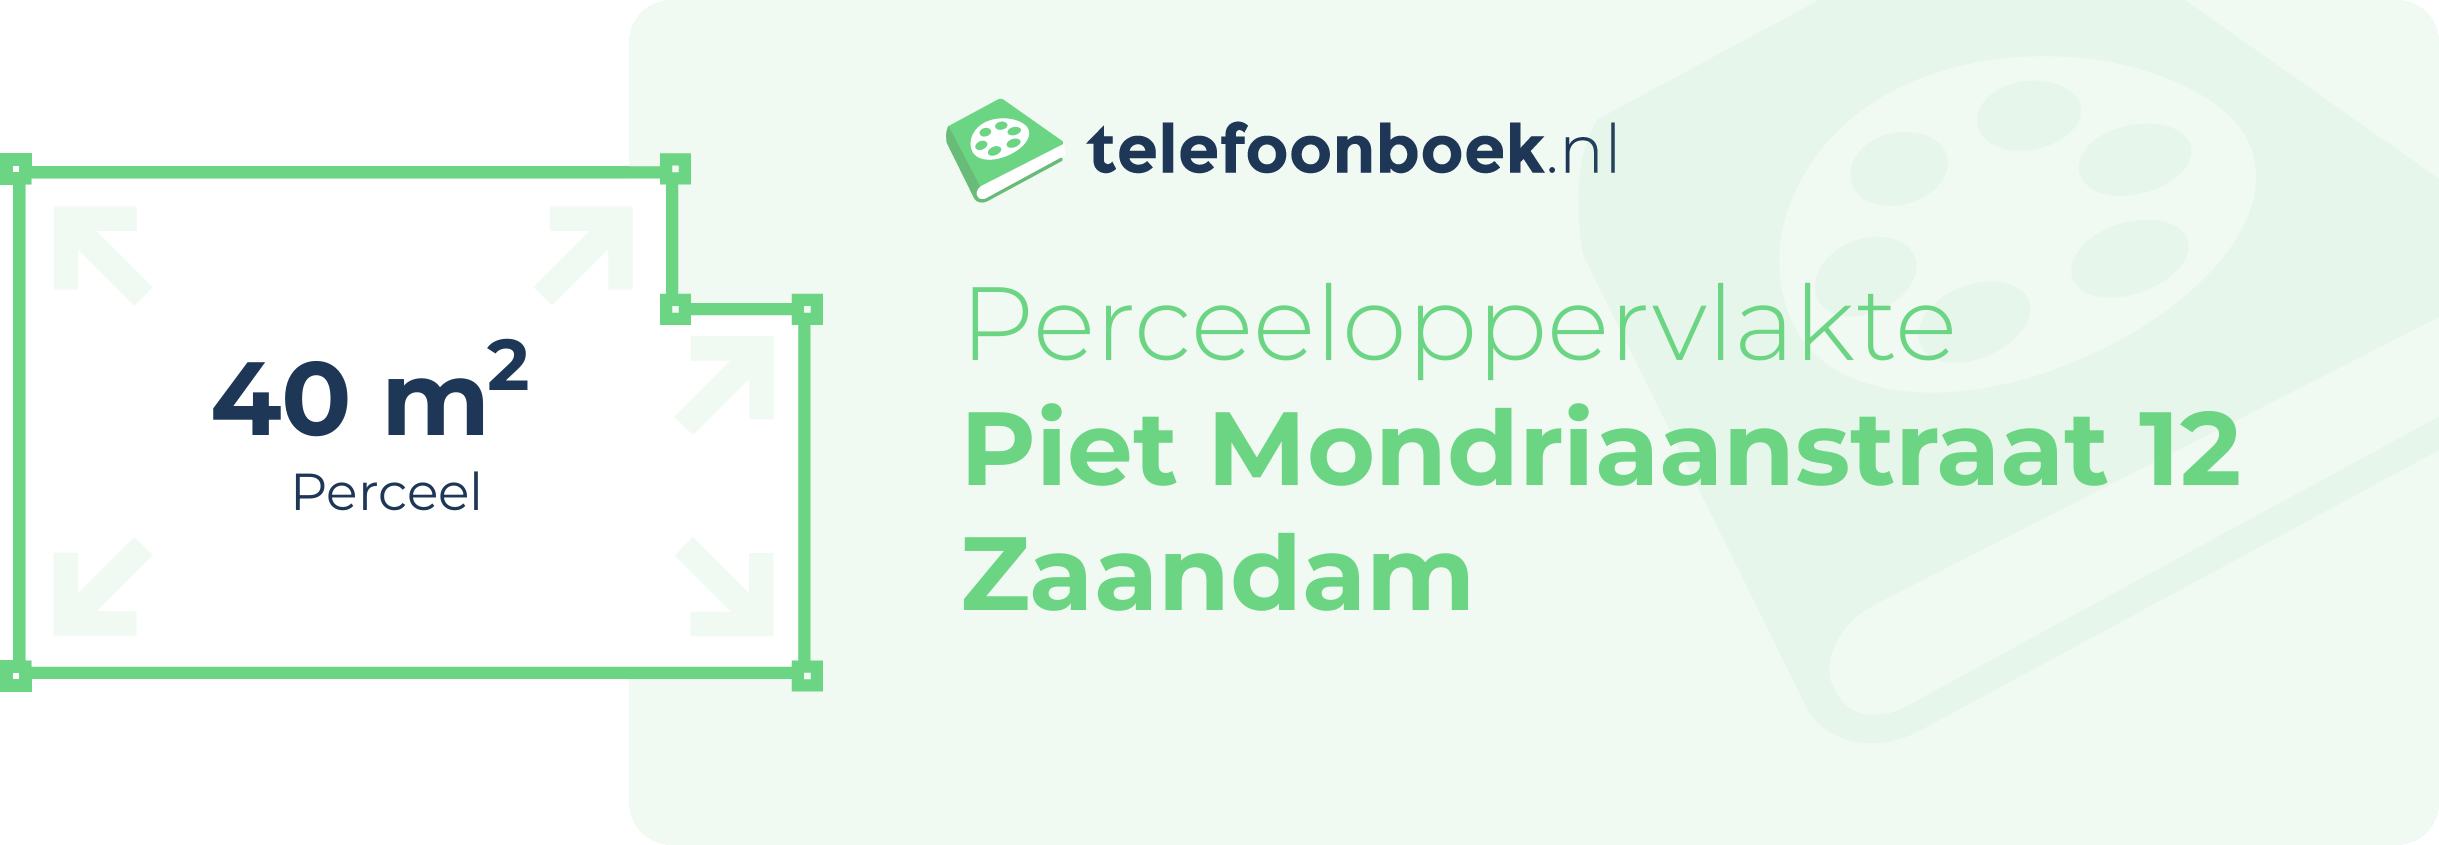 Perceeloppervlakte Piet Mondriaanstraat 12 Zaandam